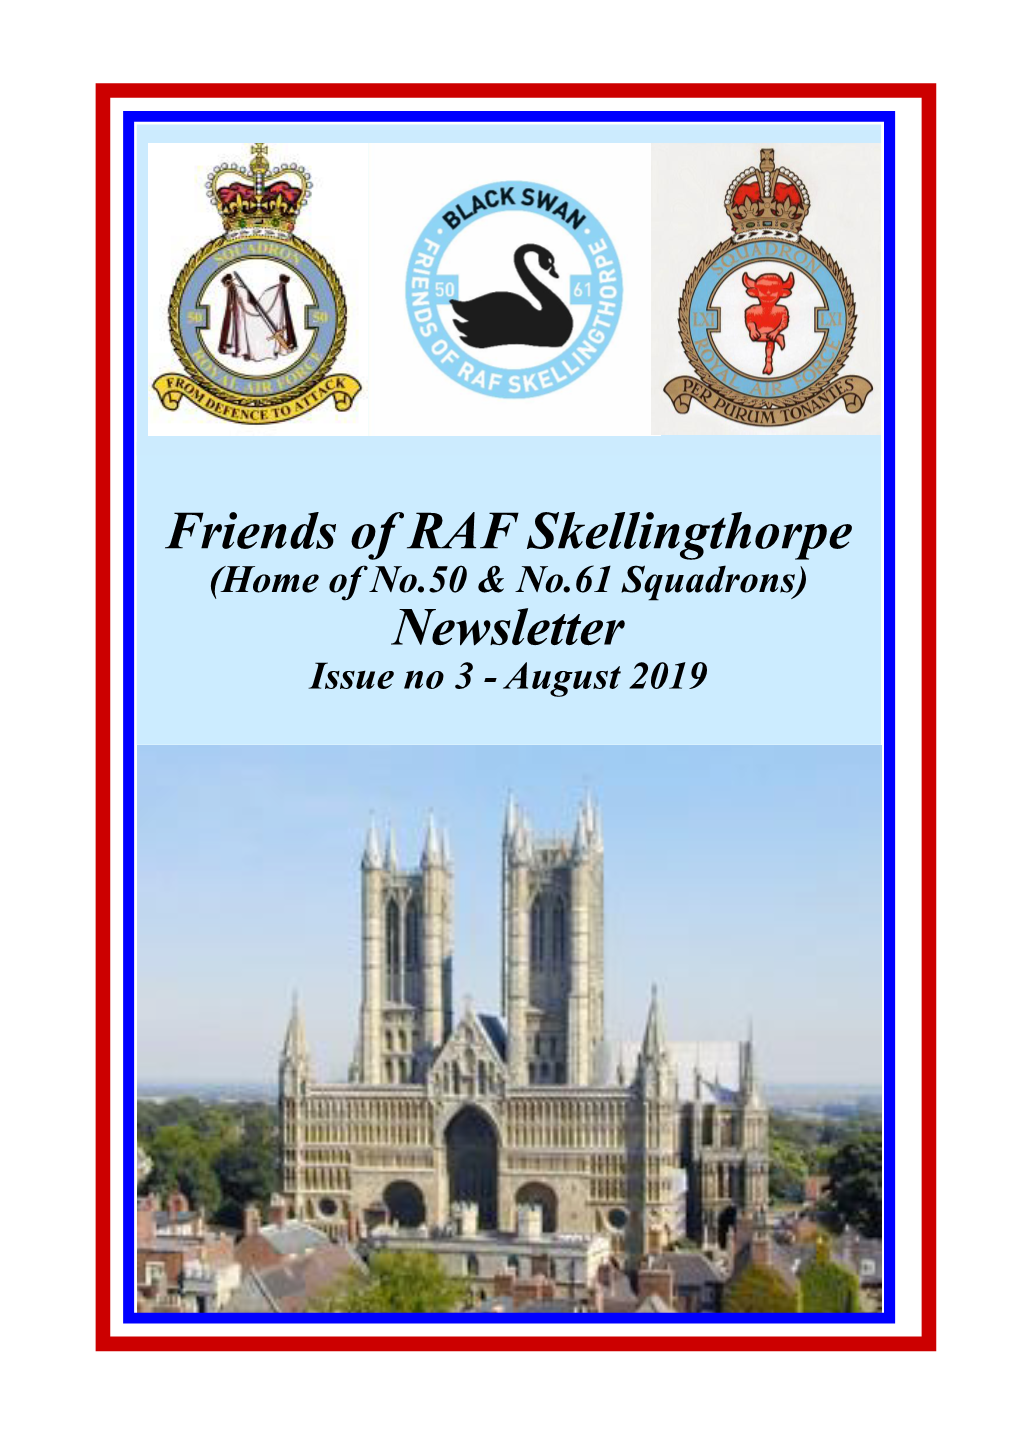 Friends of RAF Skellingthorpe Newsletter